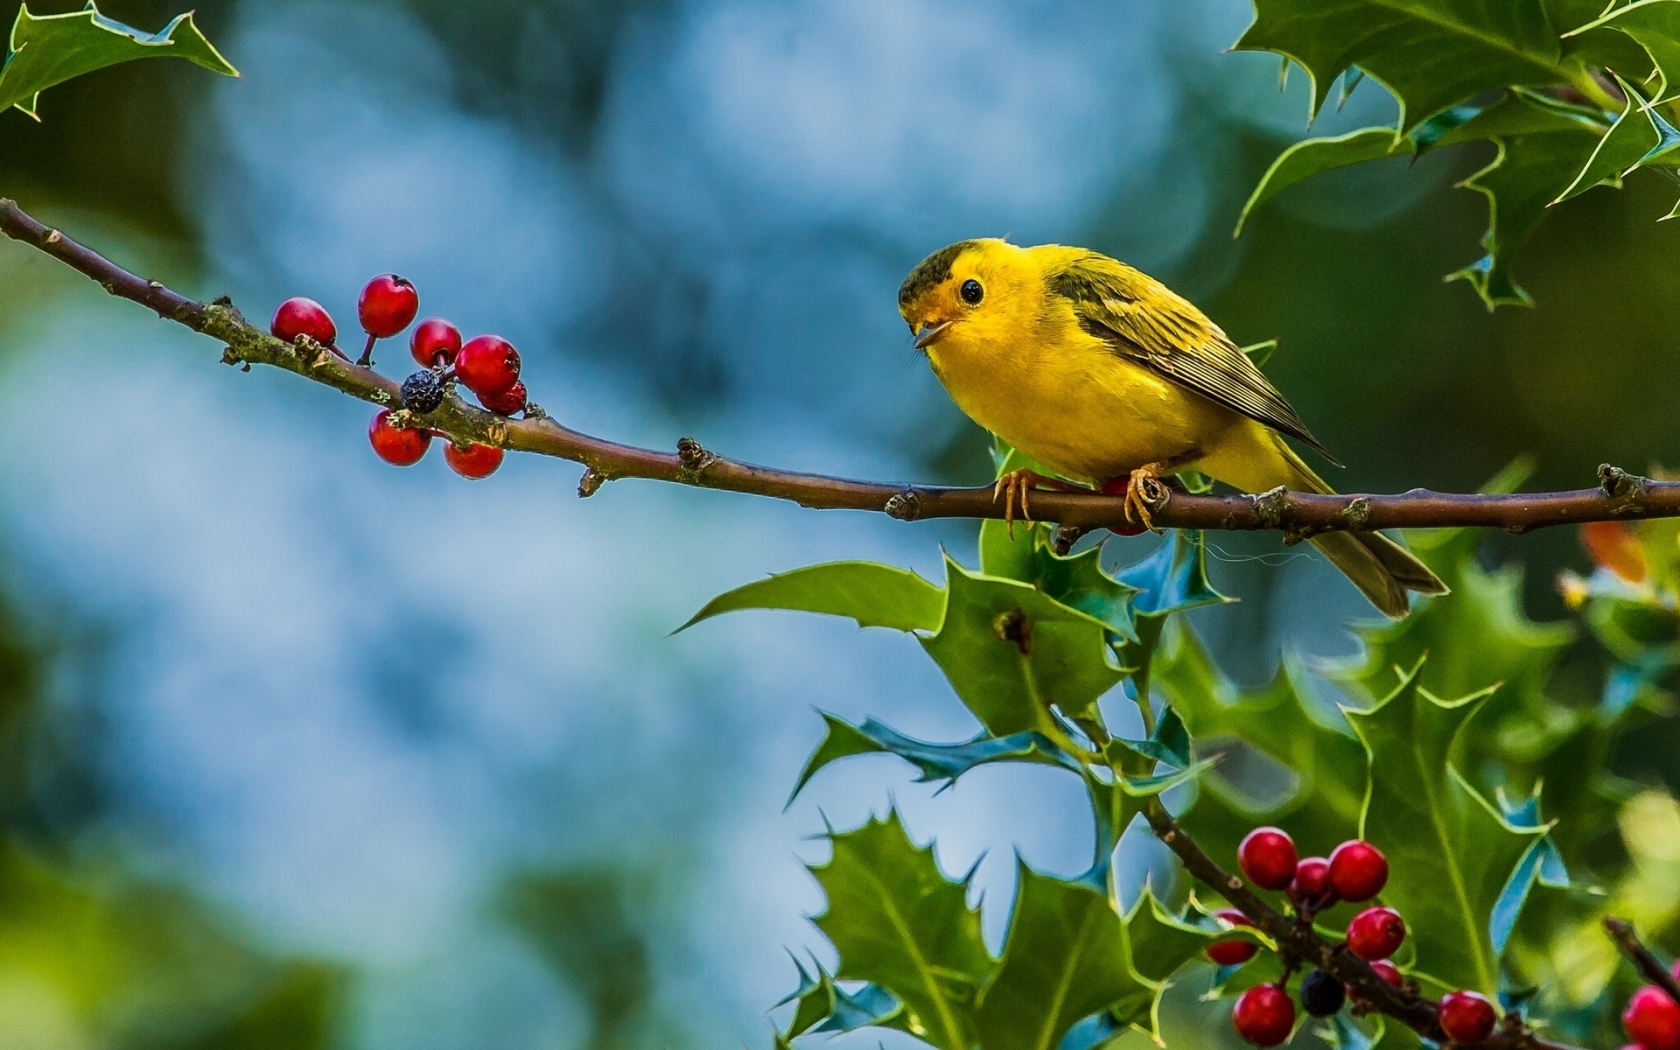 Cute Little Yellow Bird for 1680 x 1050 widescreen resolution